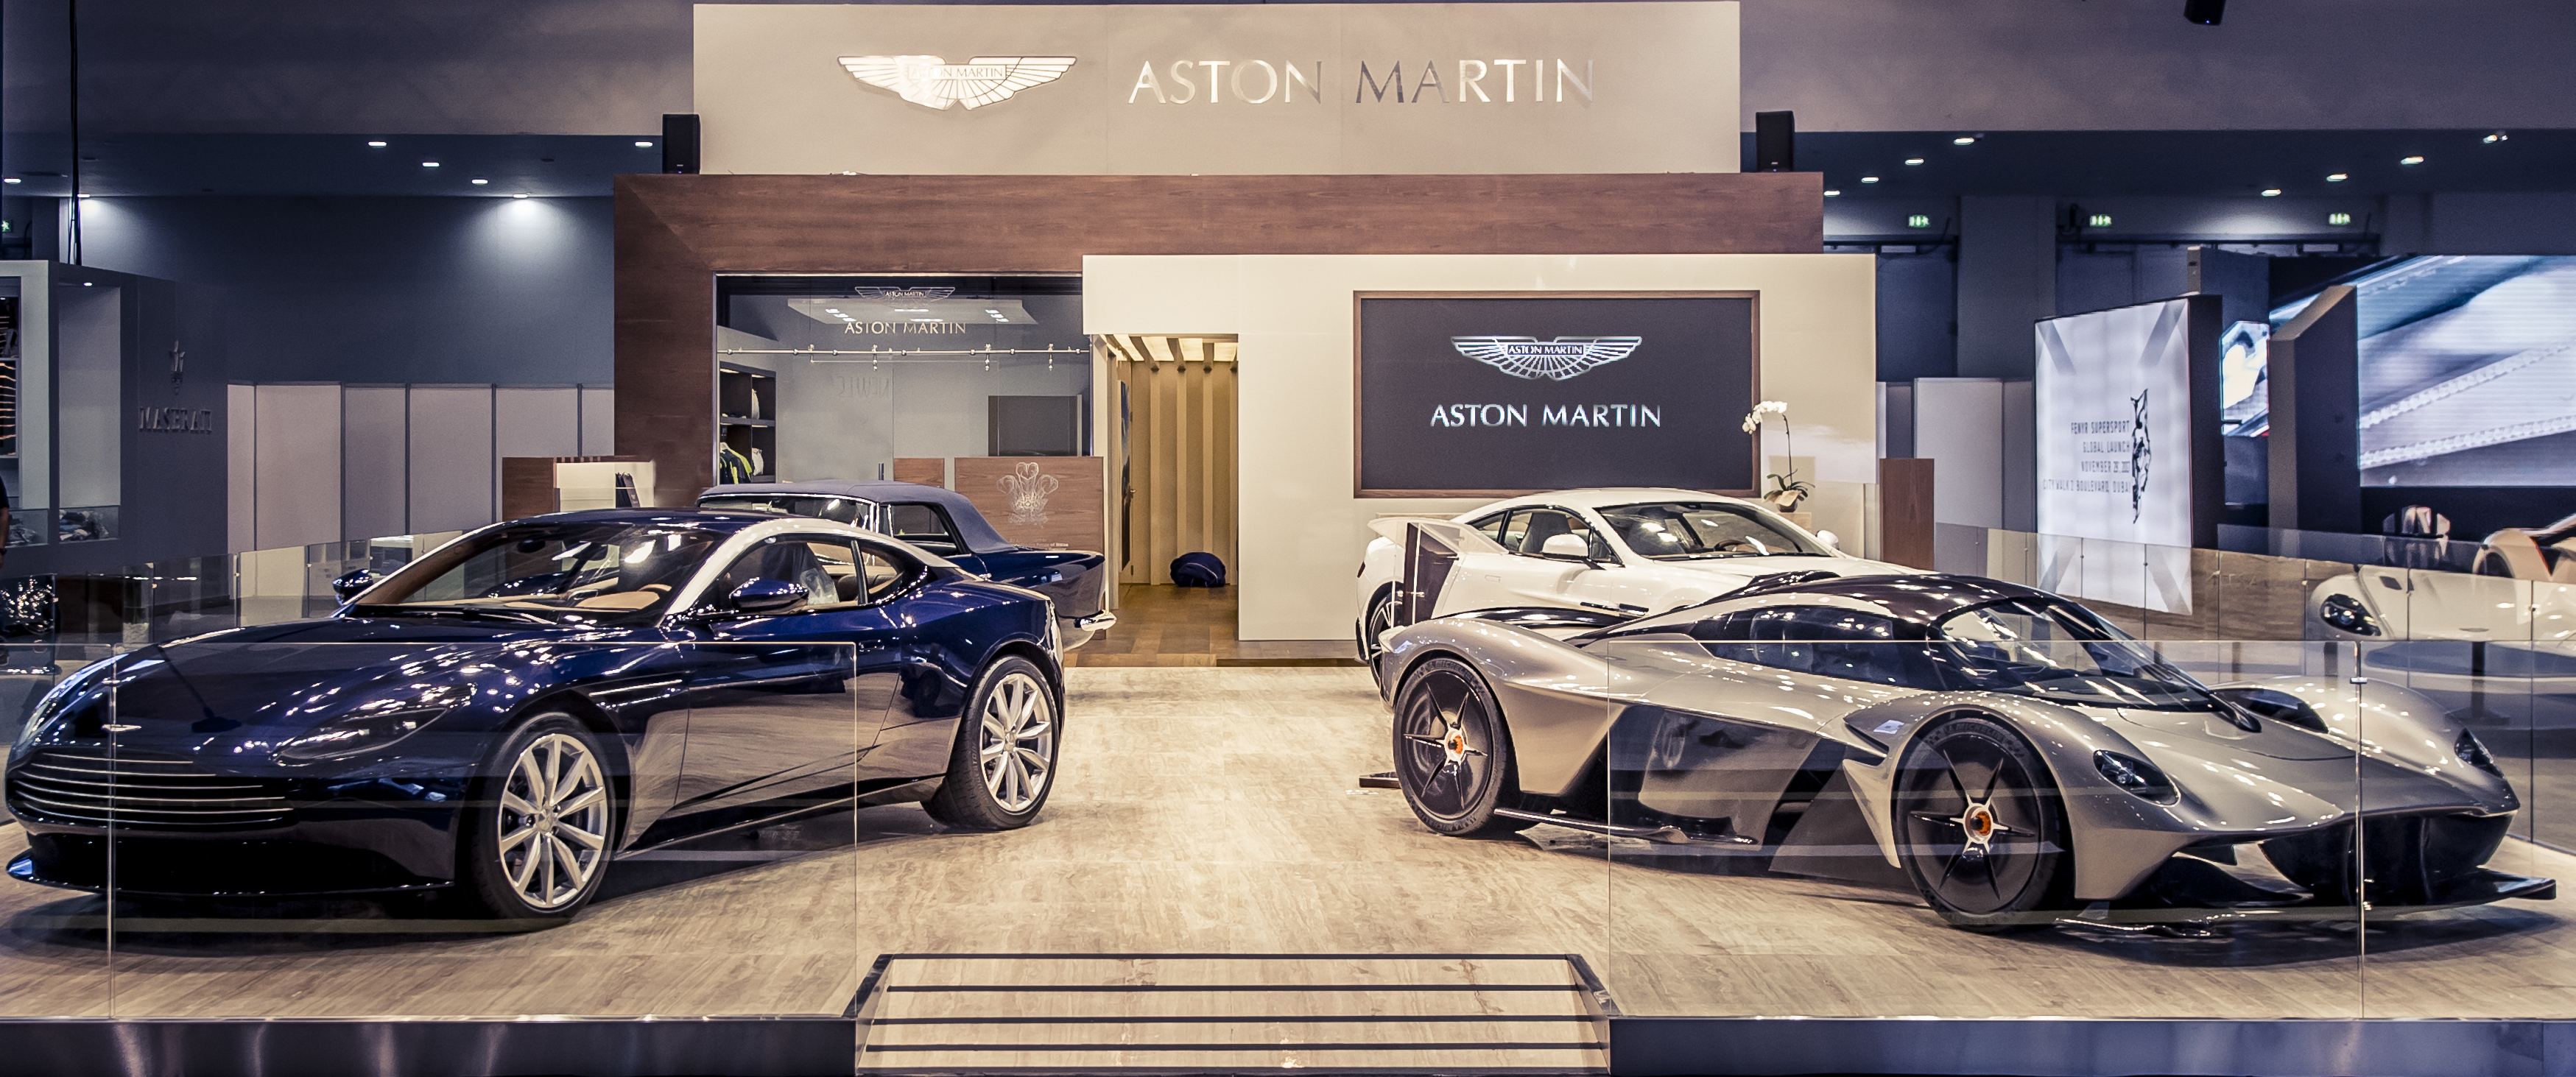 أستون مارتن تشارك في معرض دبي الدولي للسيارات 2017